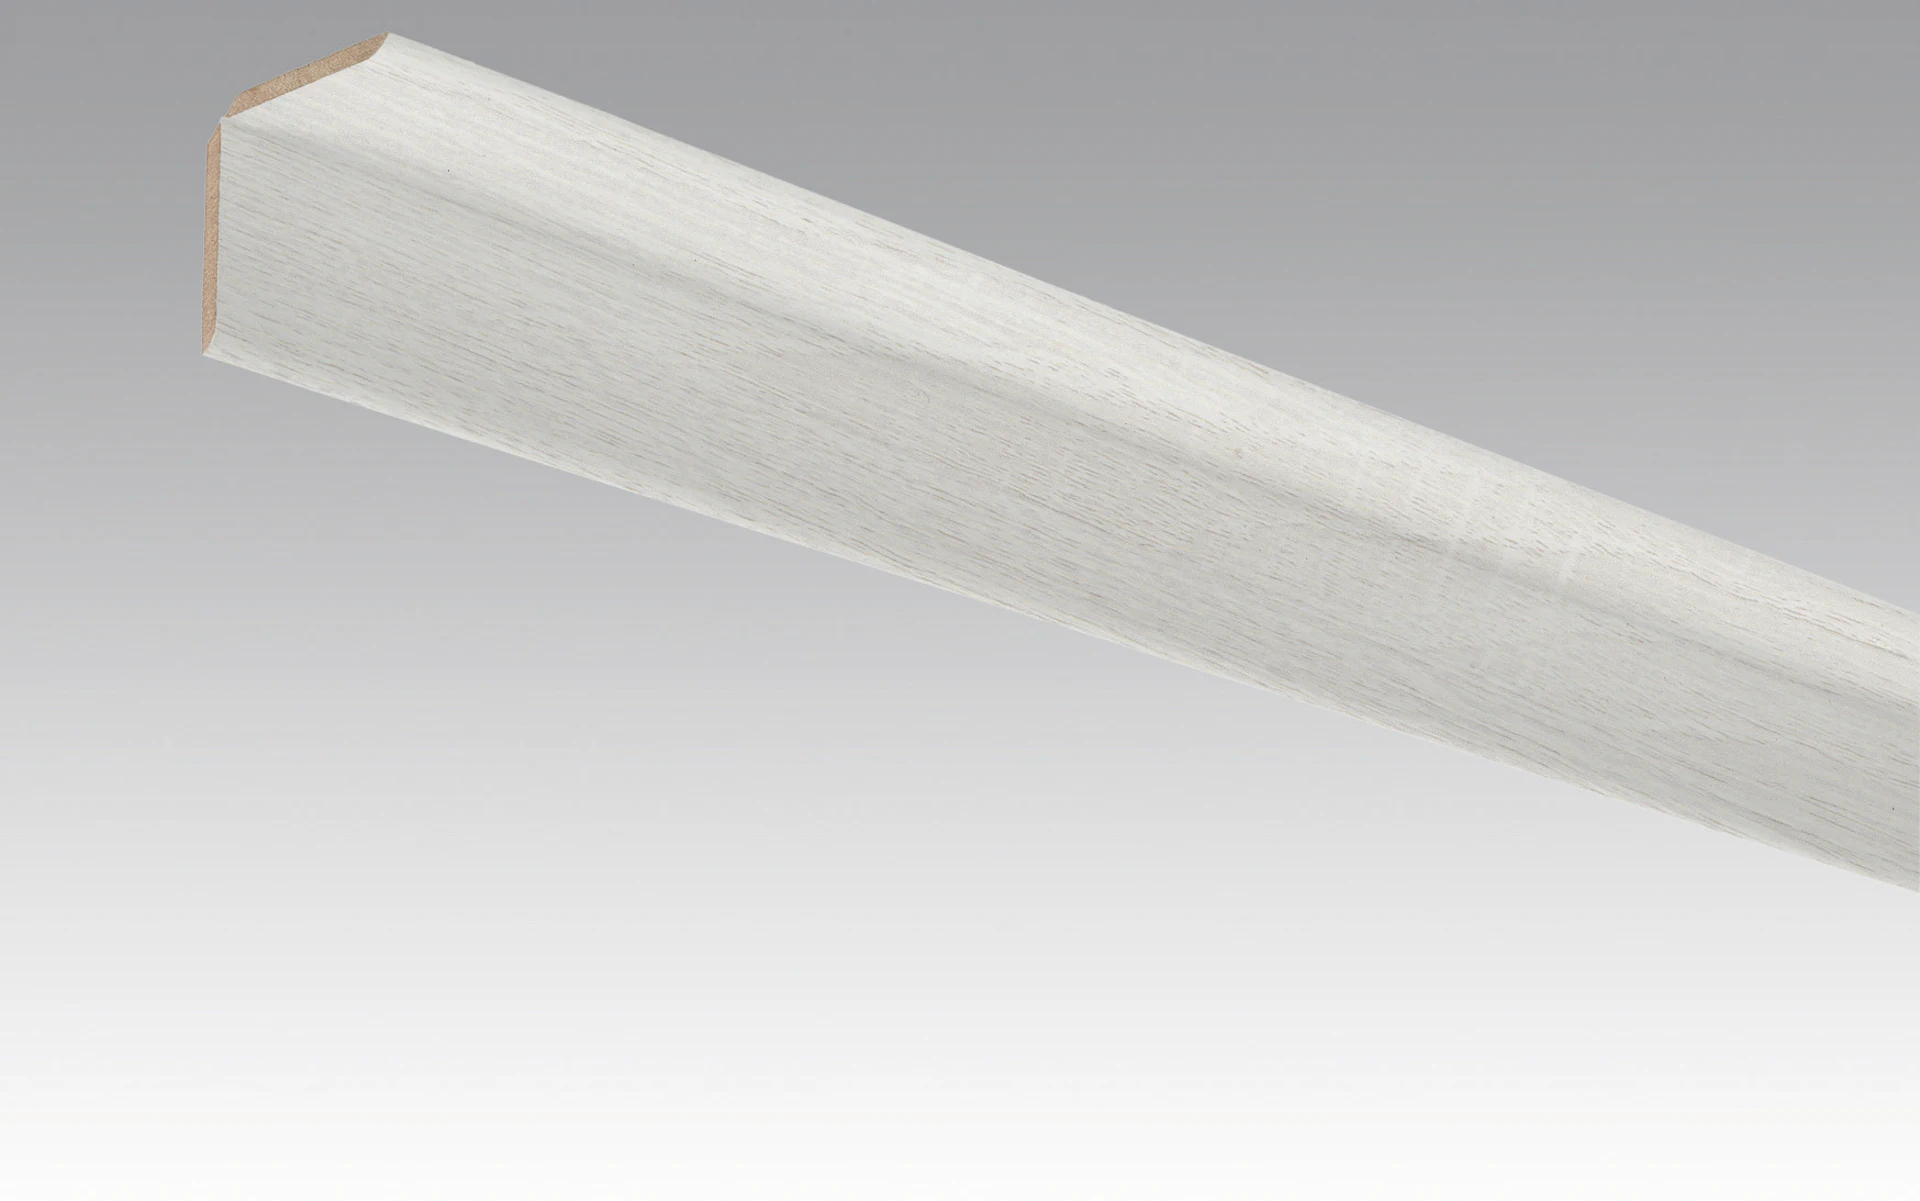 Plinthes MEISTER moulures plissées chêne blanc opaque 4069 - 2380 x 70 x 3,5 mm (200033-2380-04069)